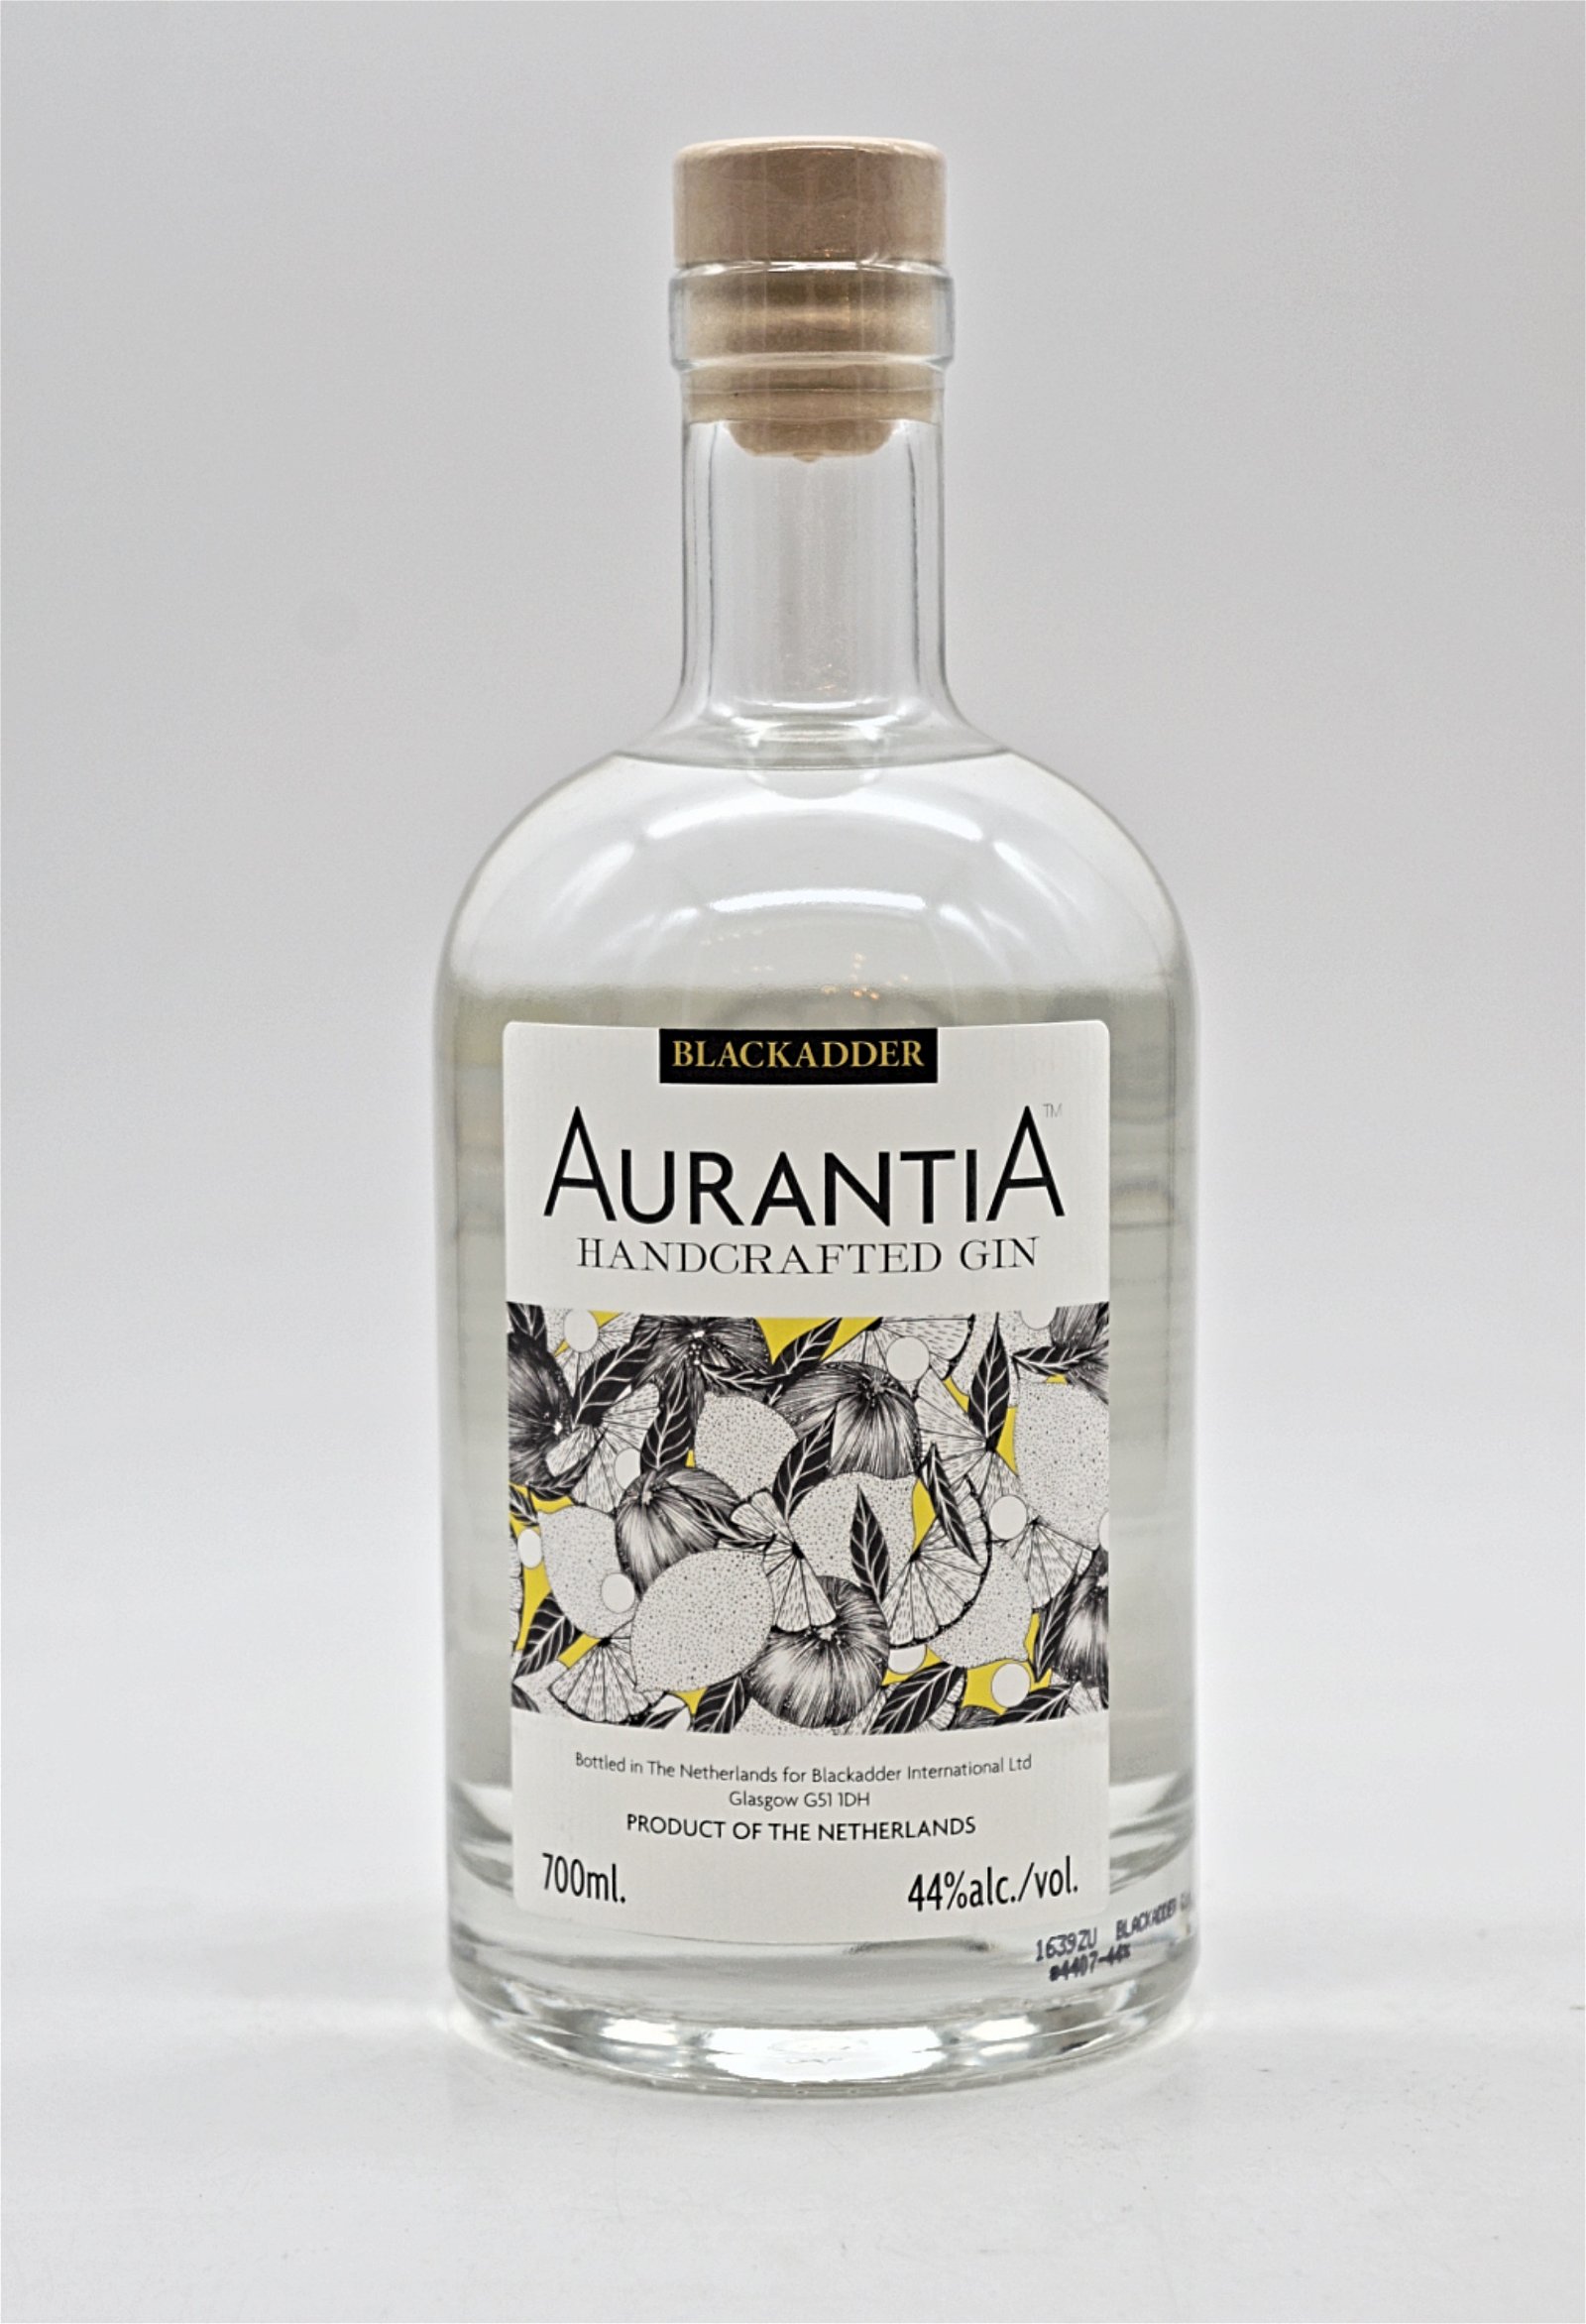 Blackadder Aurantia Handcrafted Gin